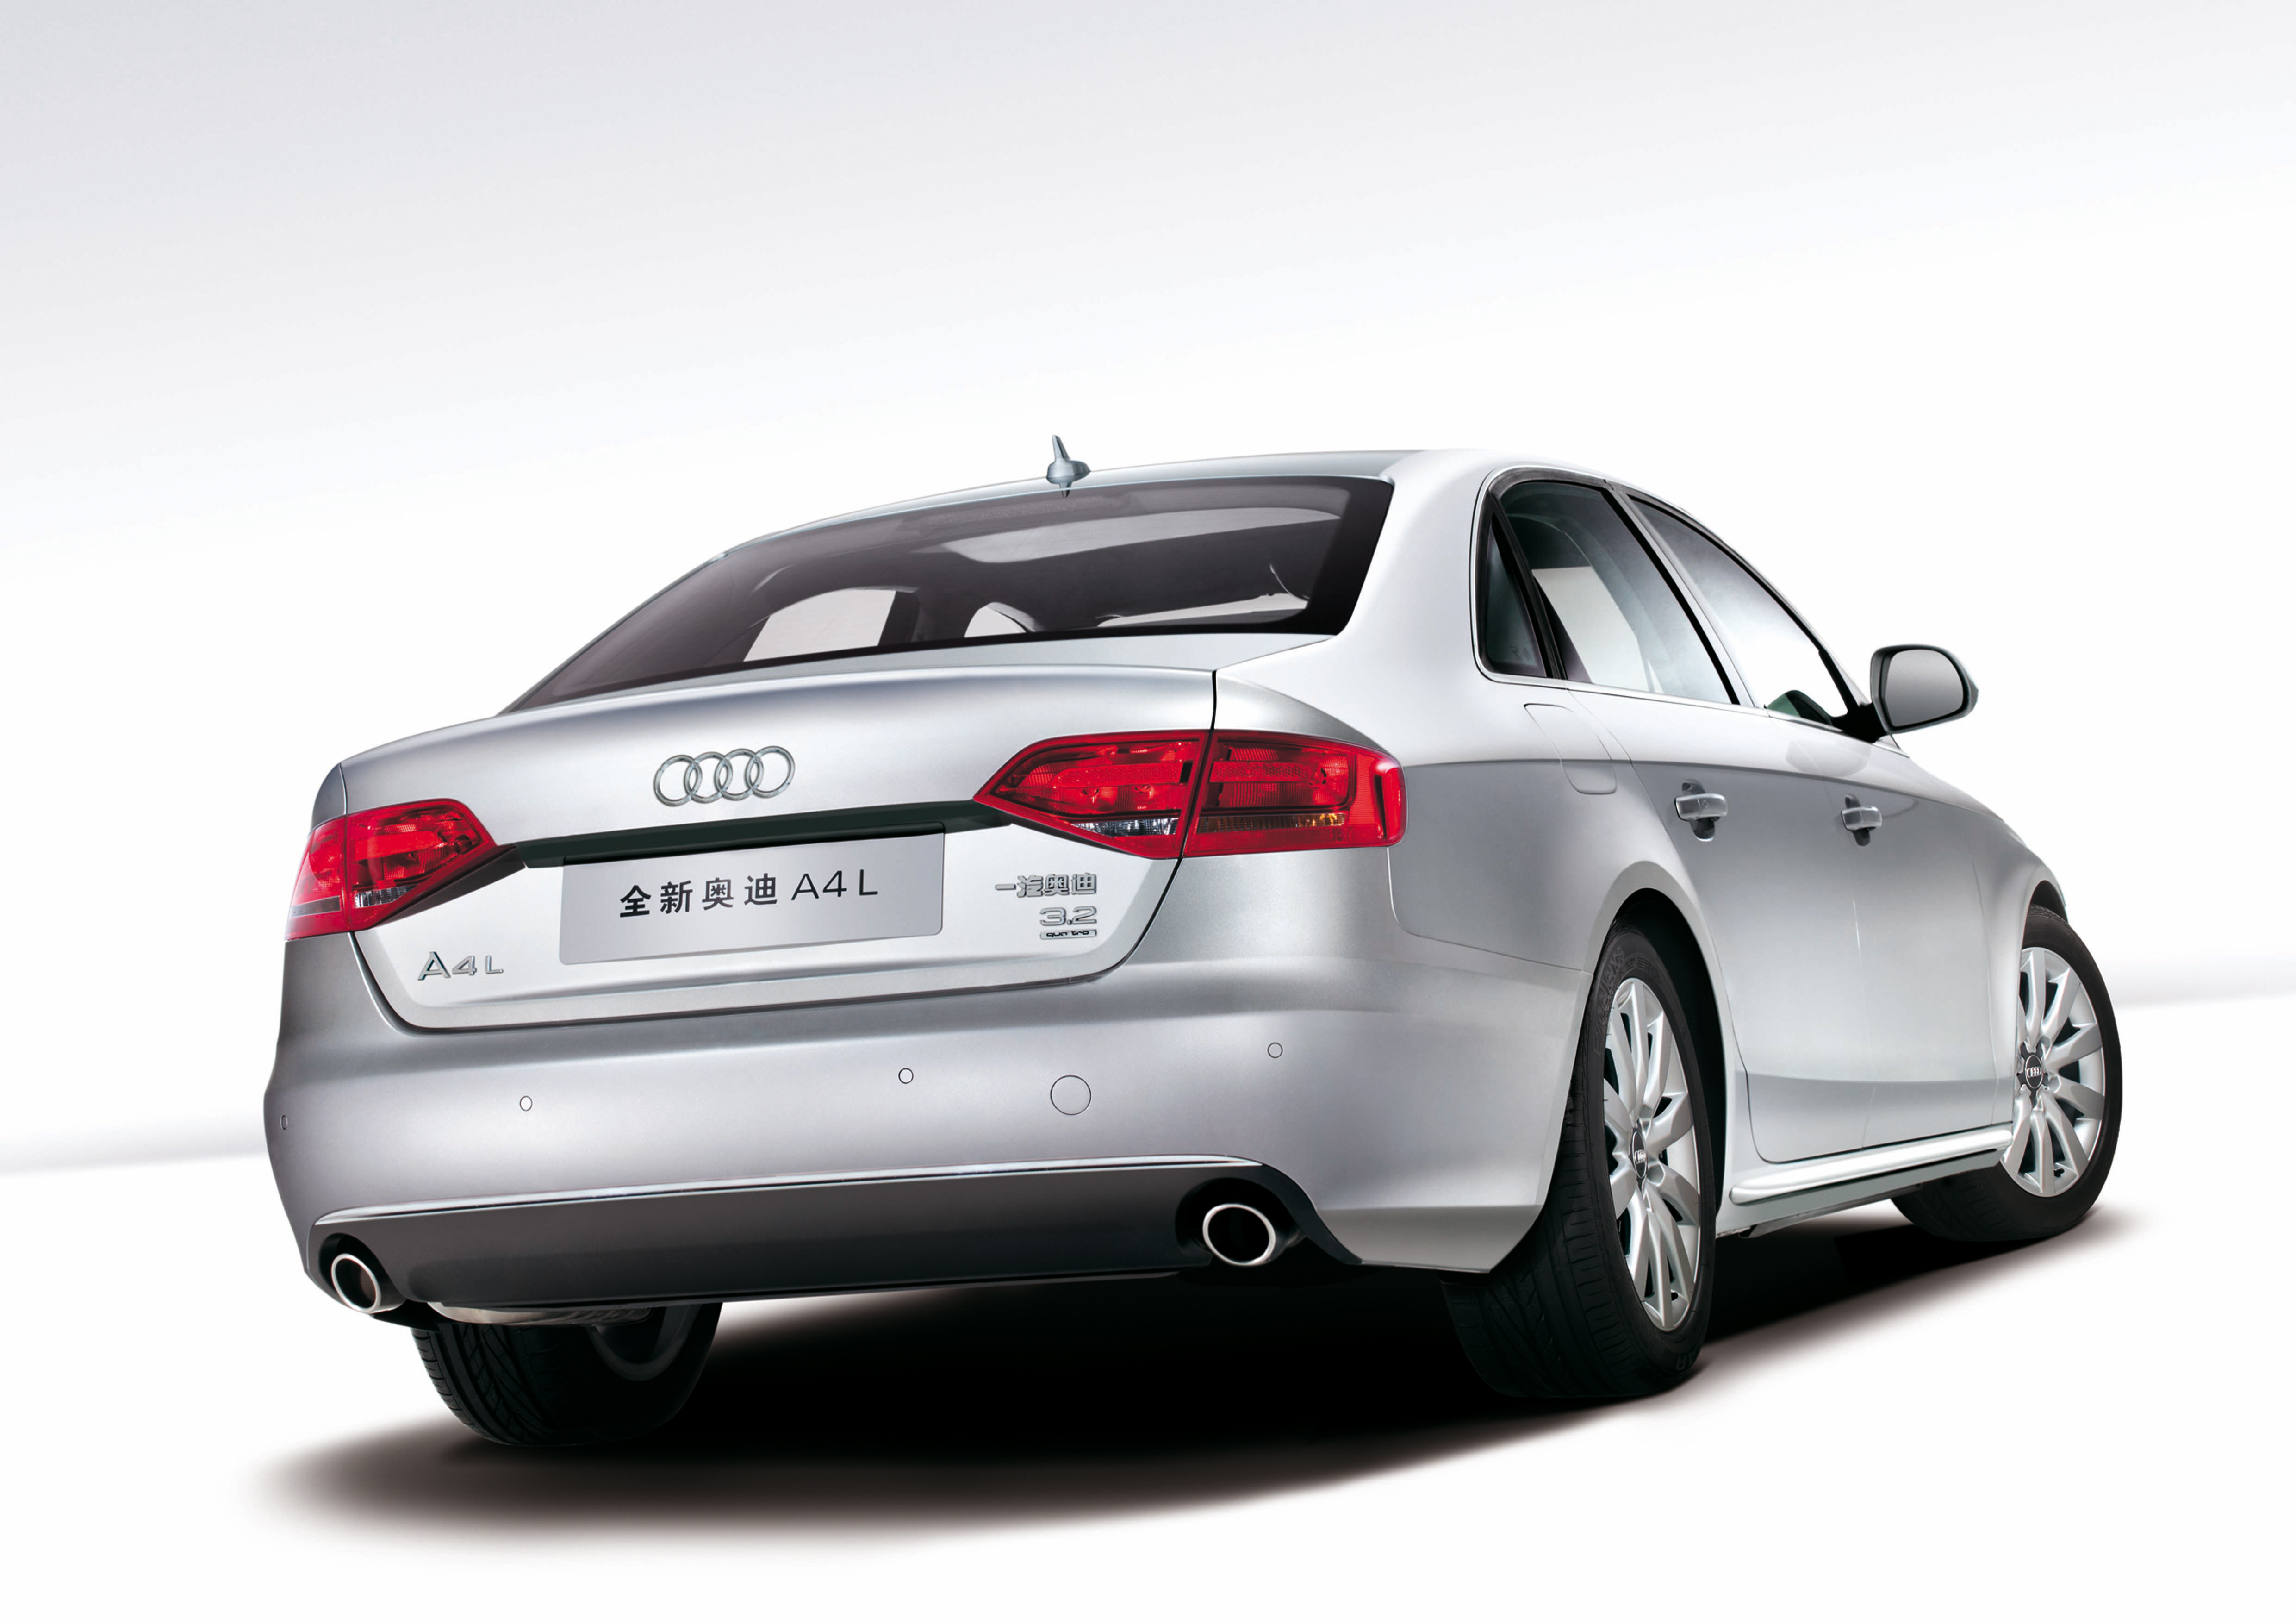 Der Audi A4L wird ab Januar 2009 auf dem chinesischen Markt verfuegbar sein.